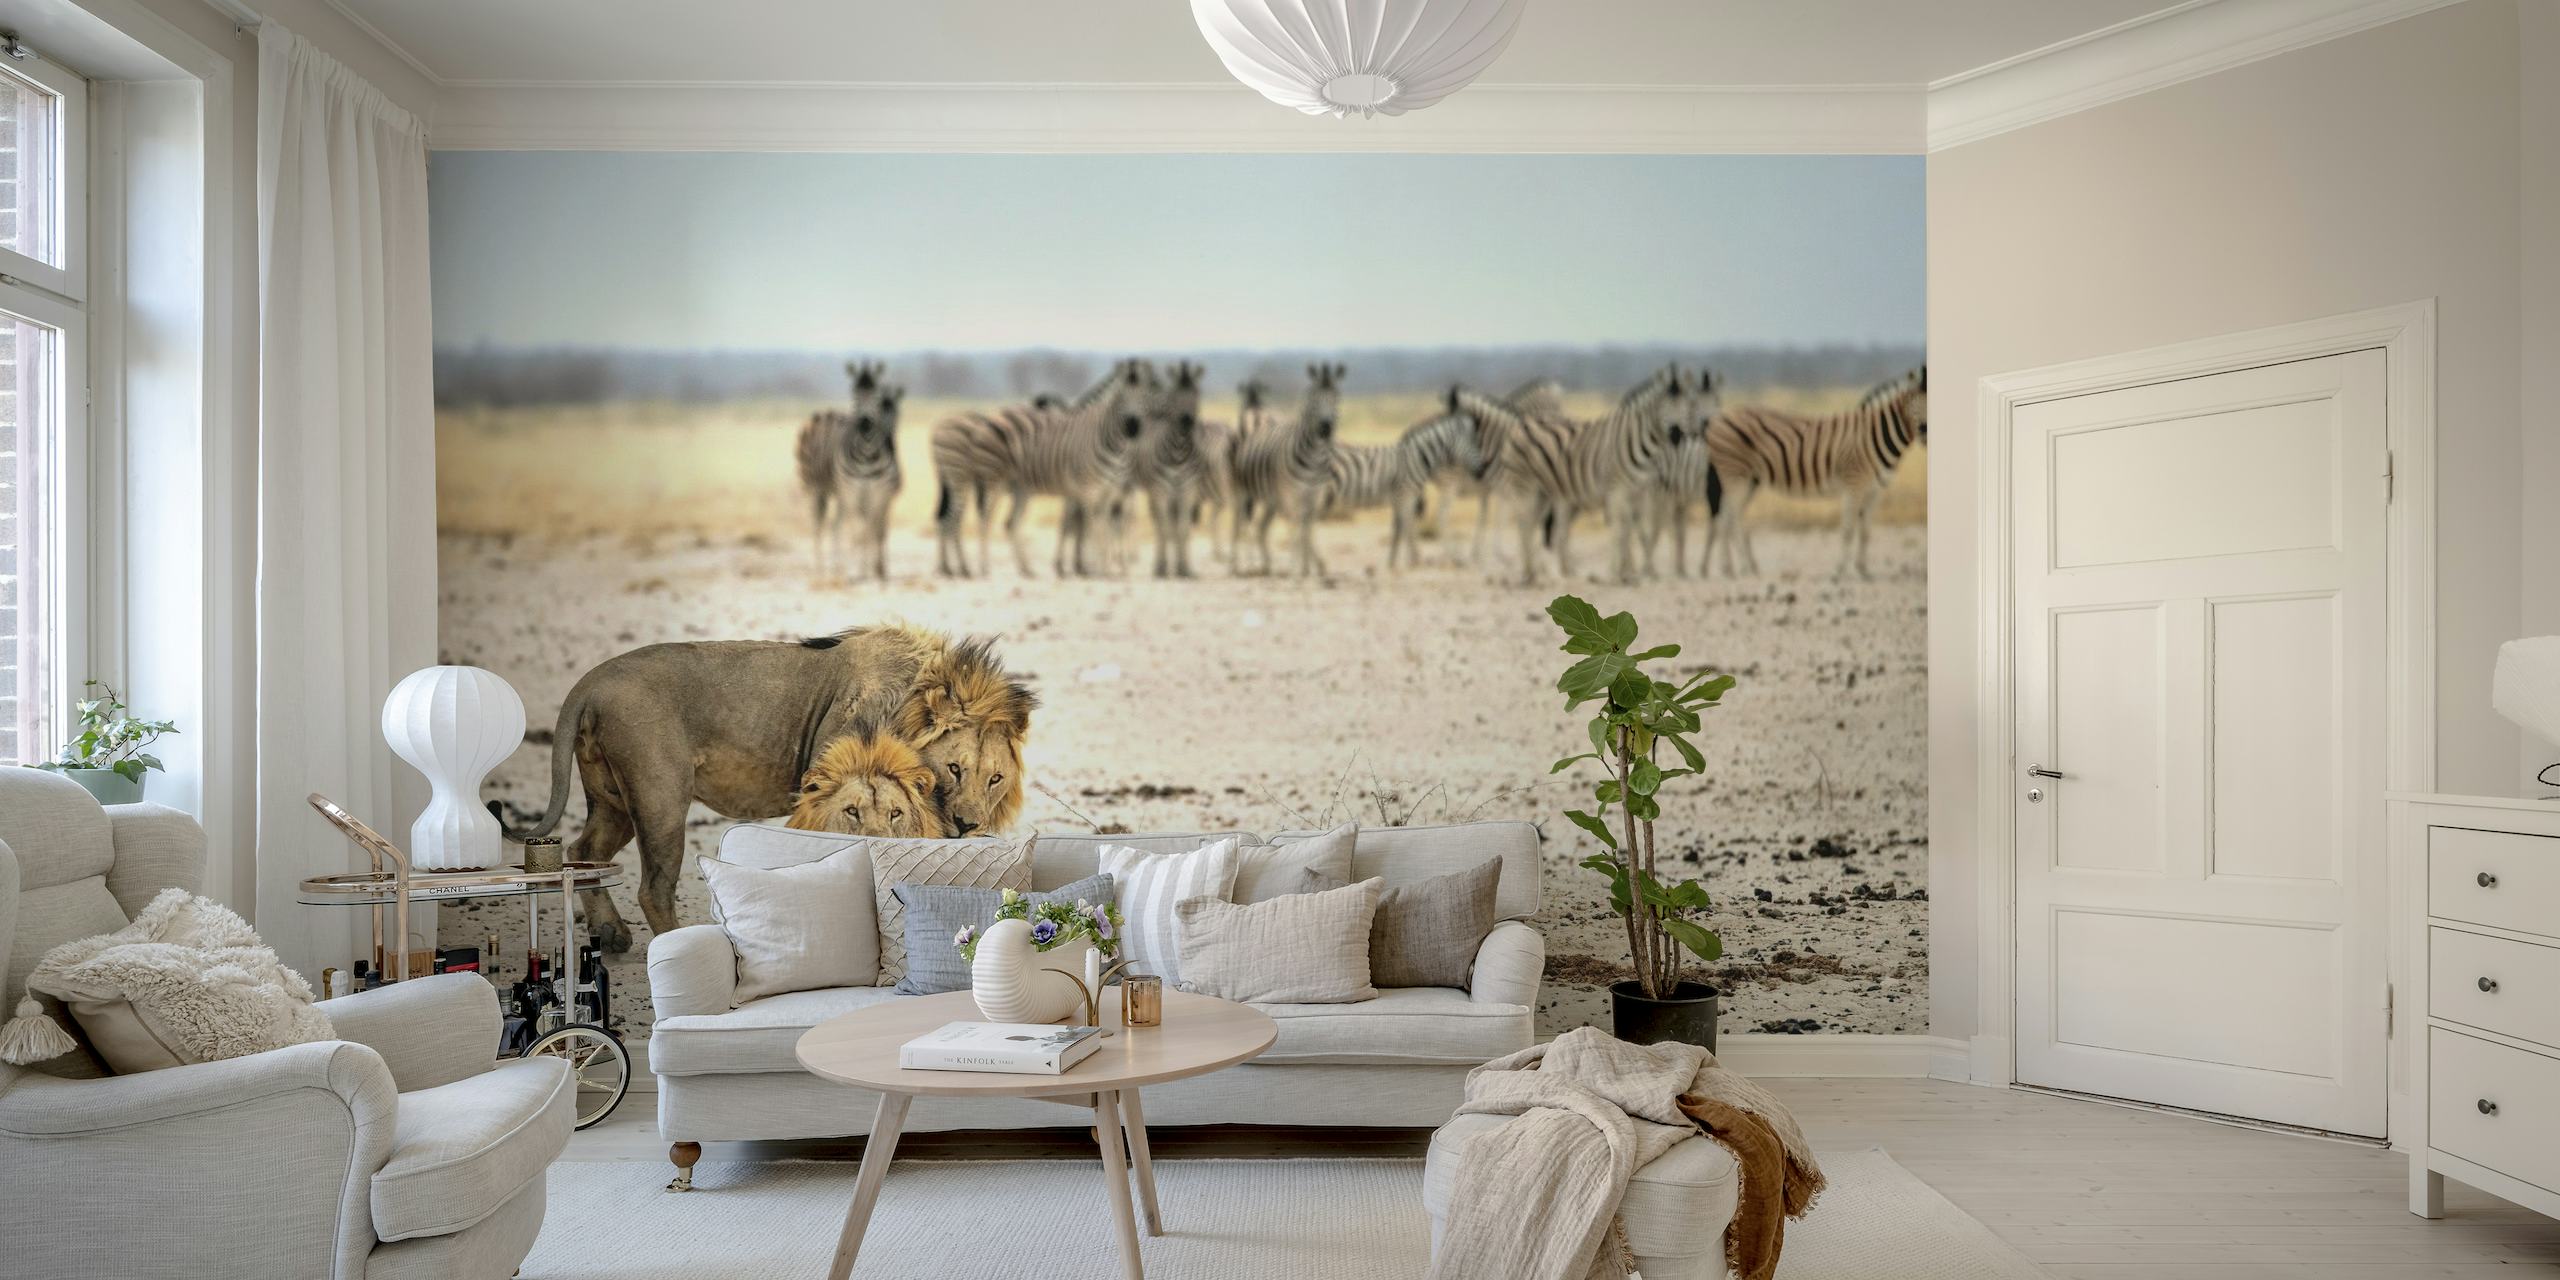 Leone e zebre in un murale della savana africana